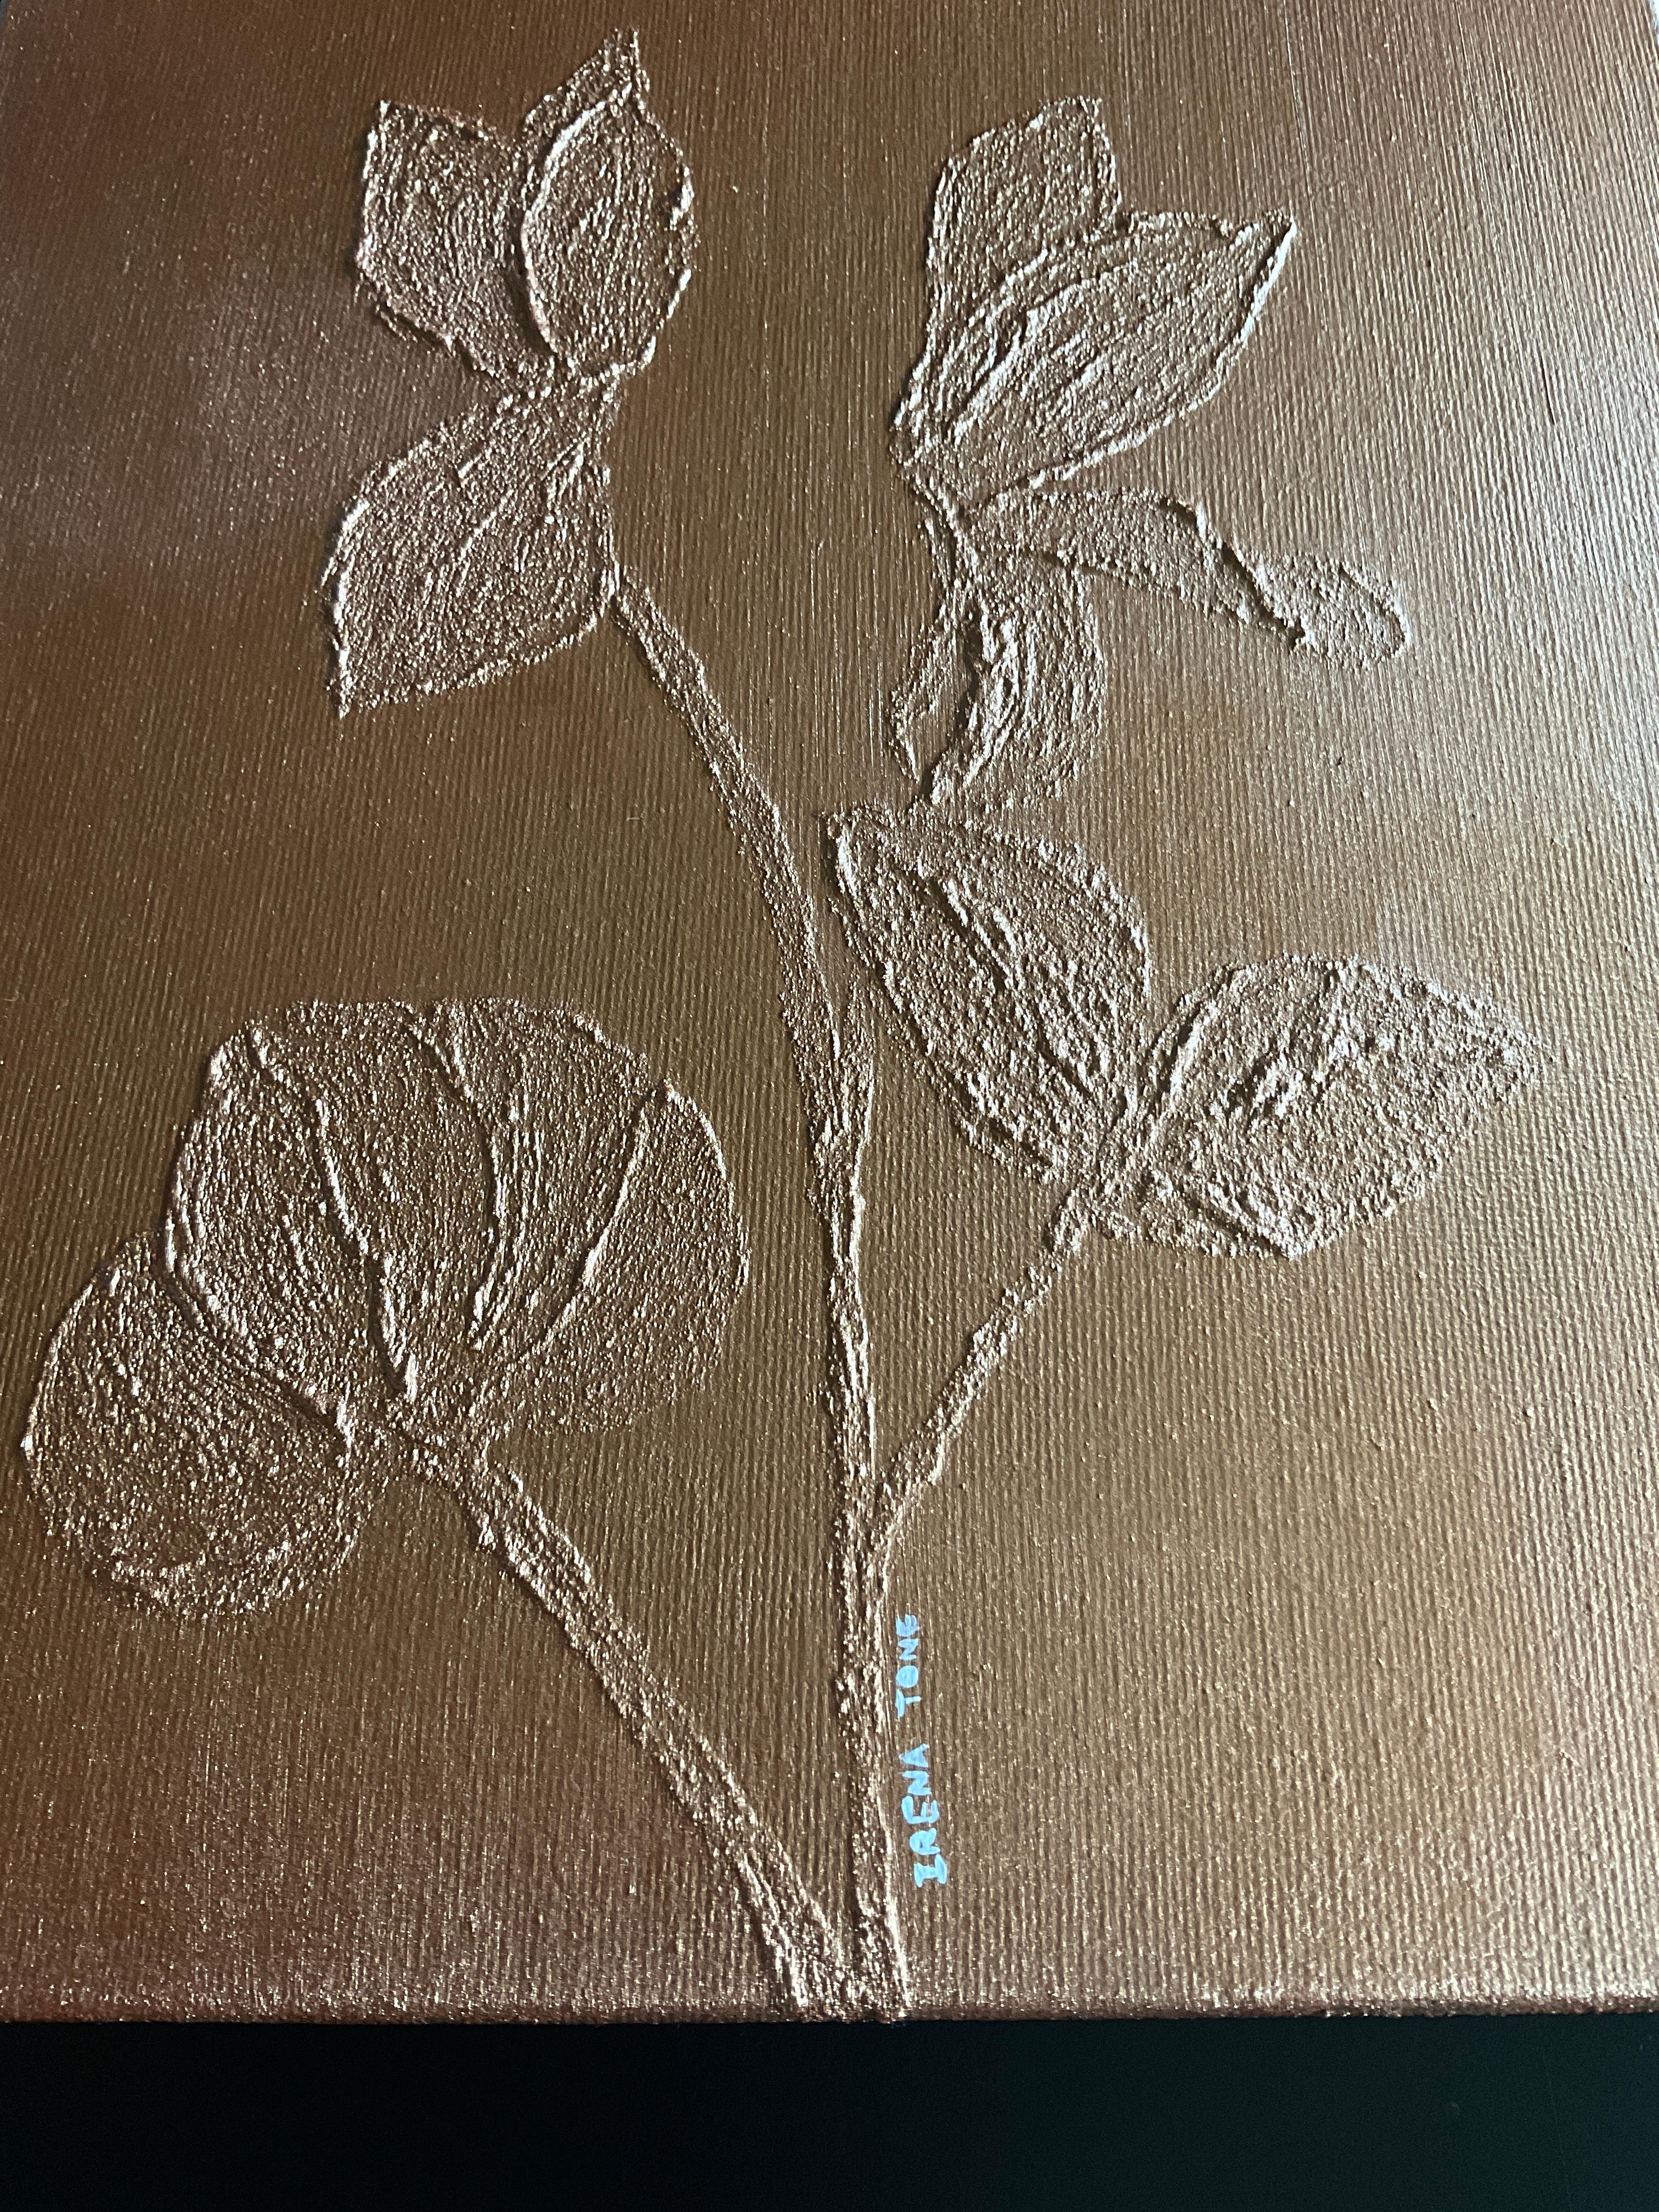 Cyclamen Blume – Sculpture von IRENA TONE